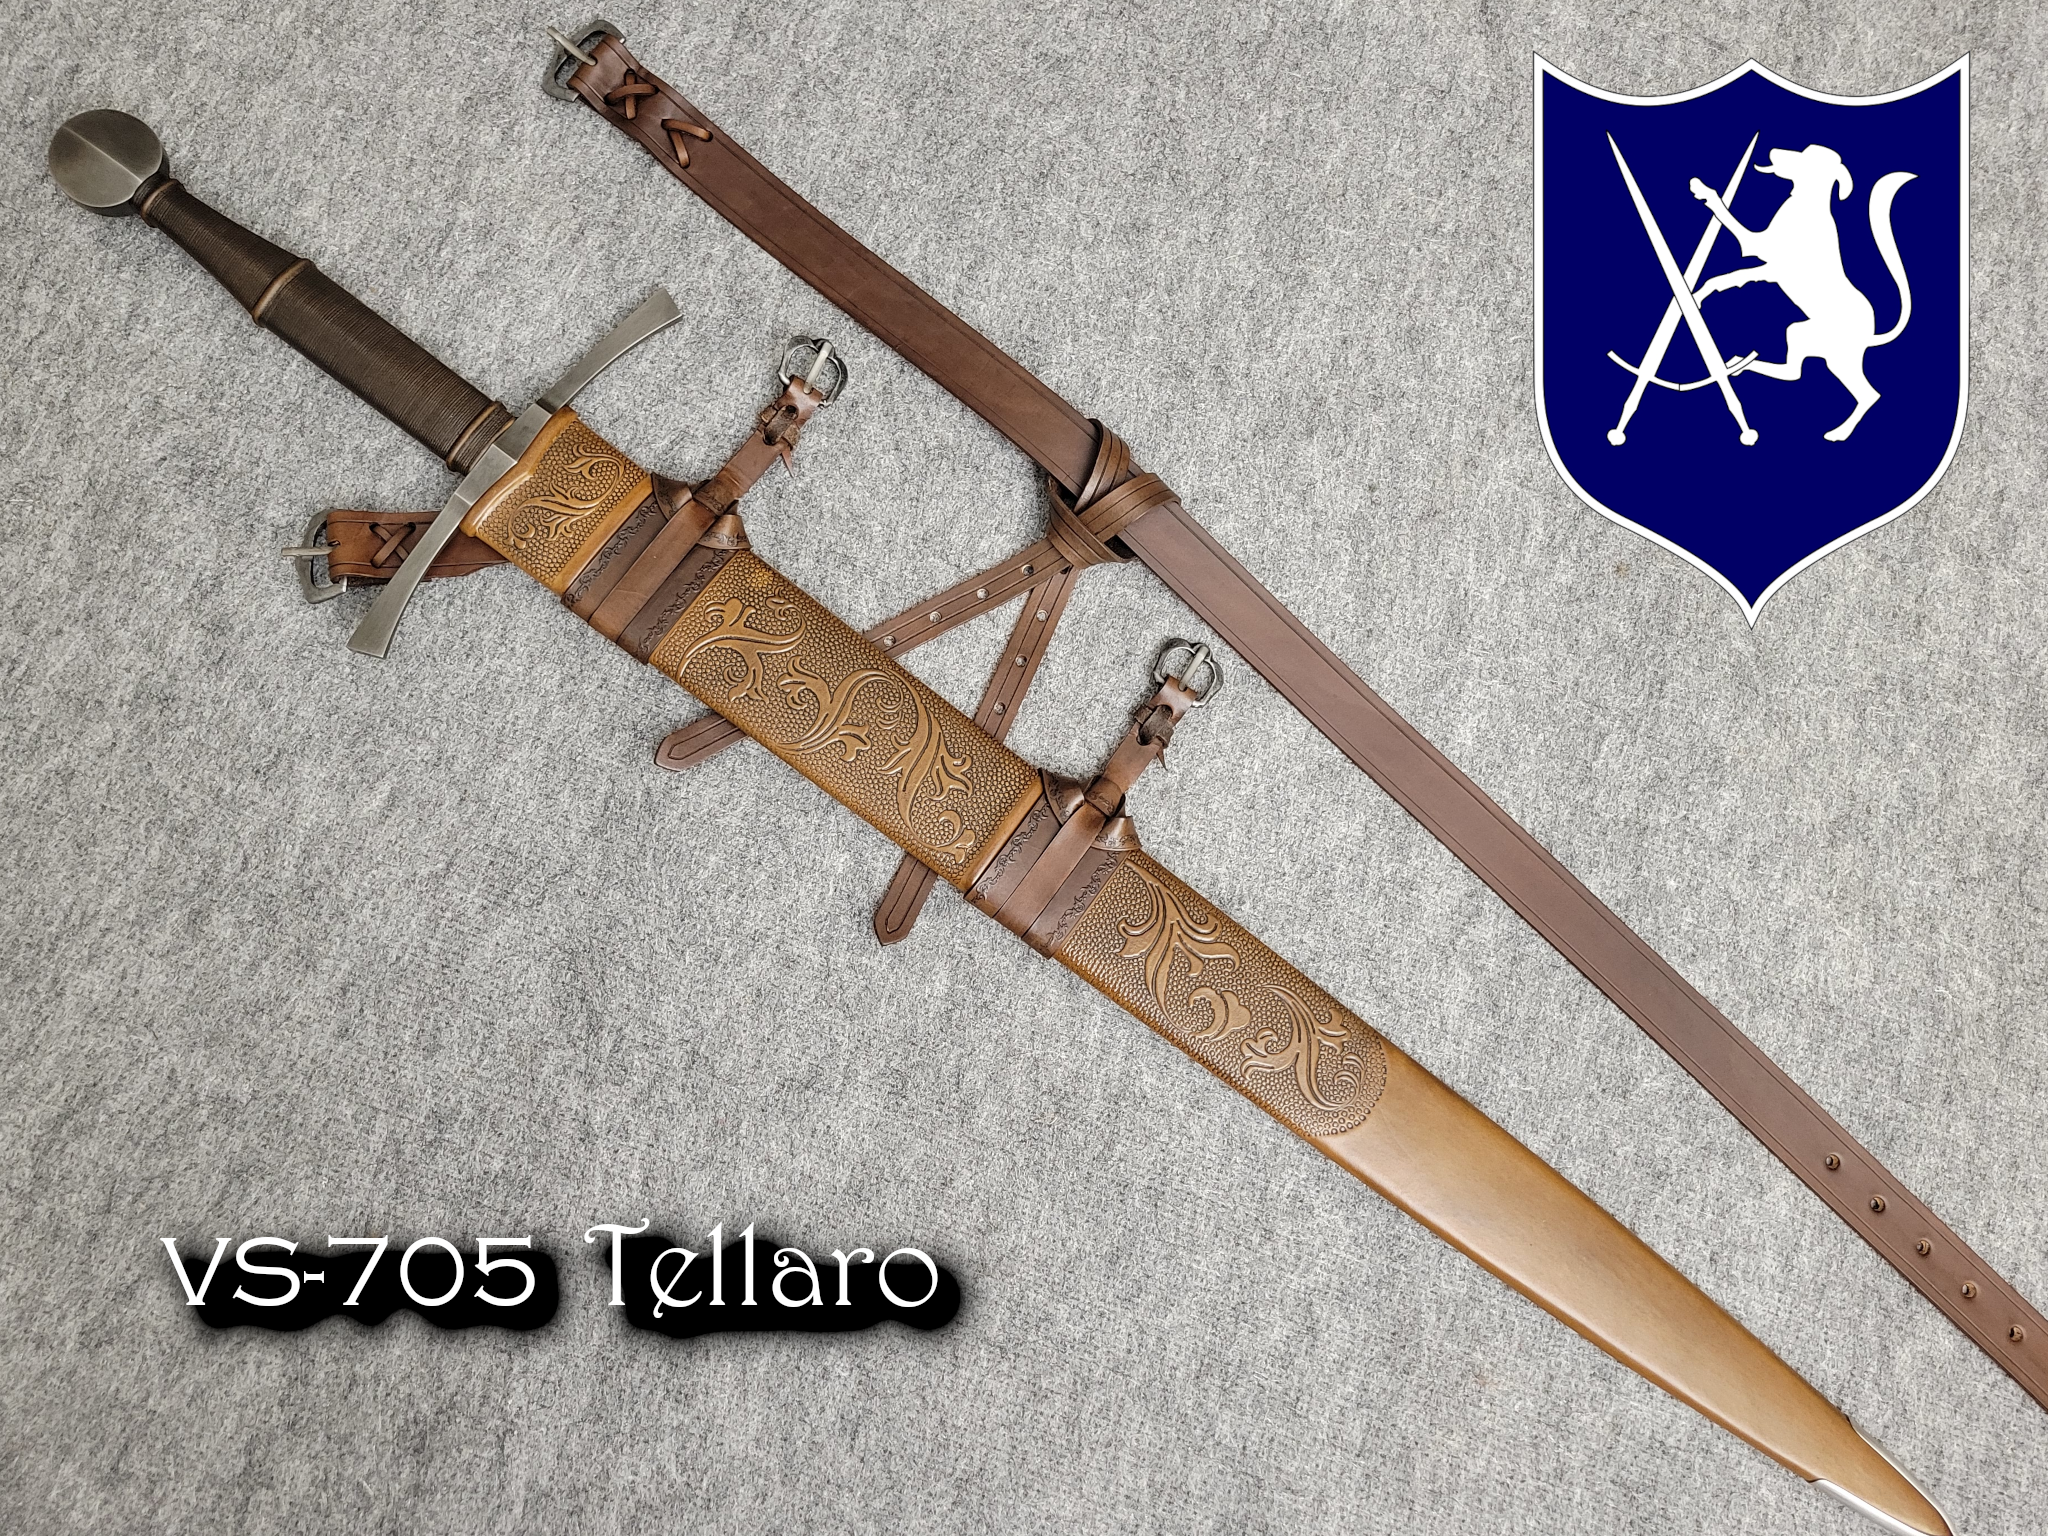 VS-705 Tellaro